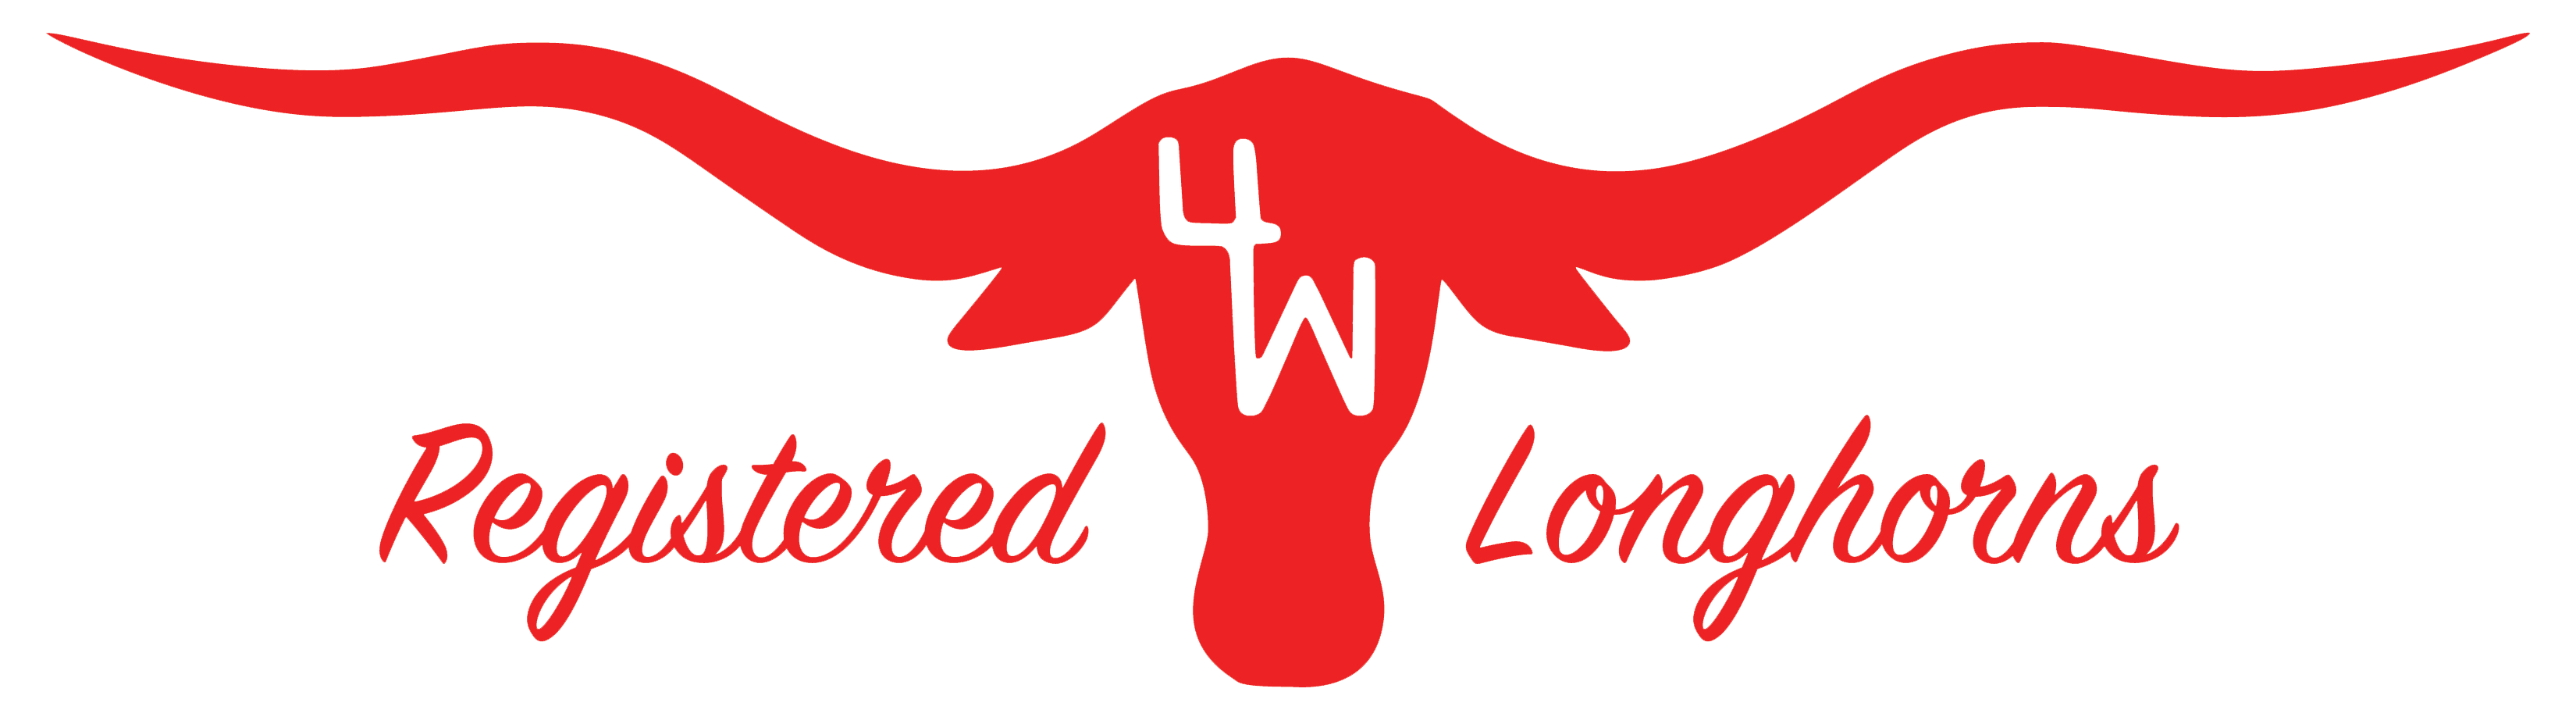 4W Longhorns logo